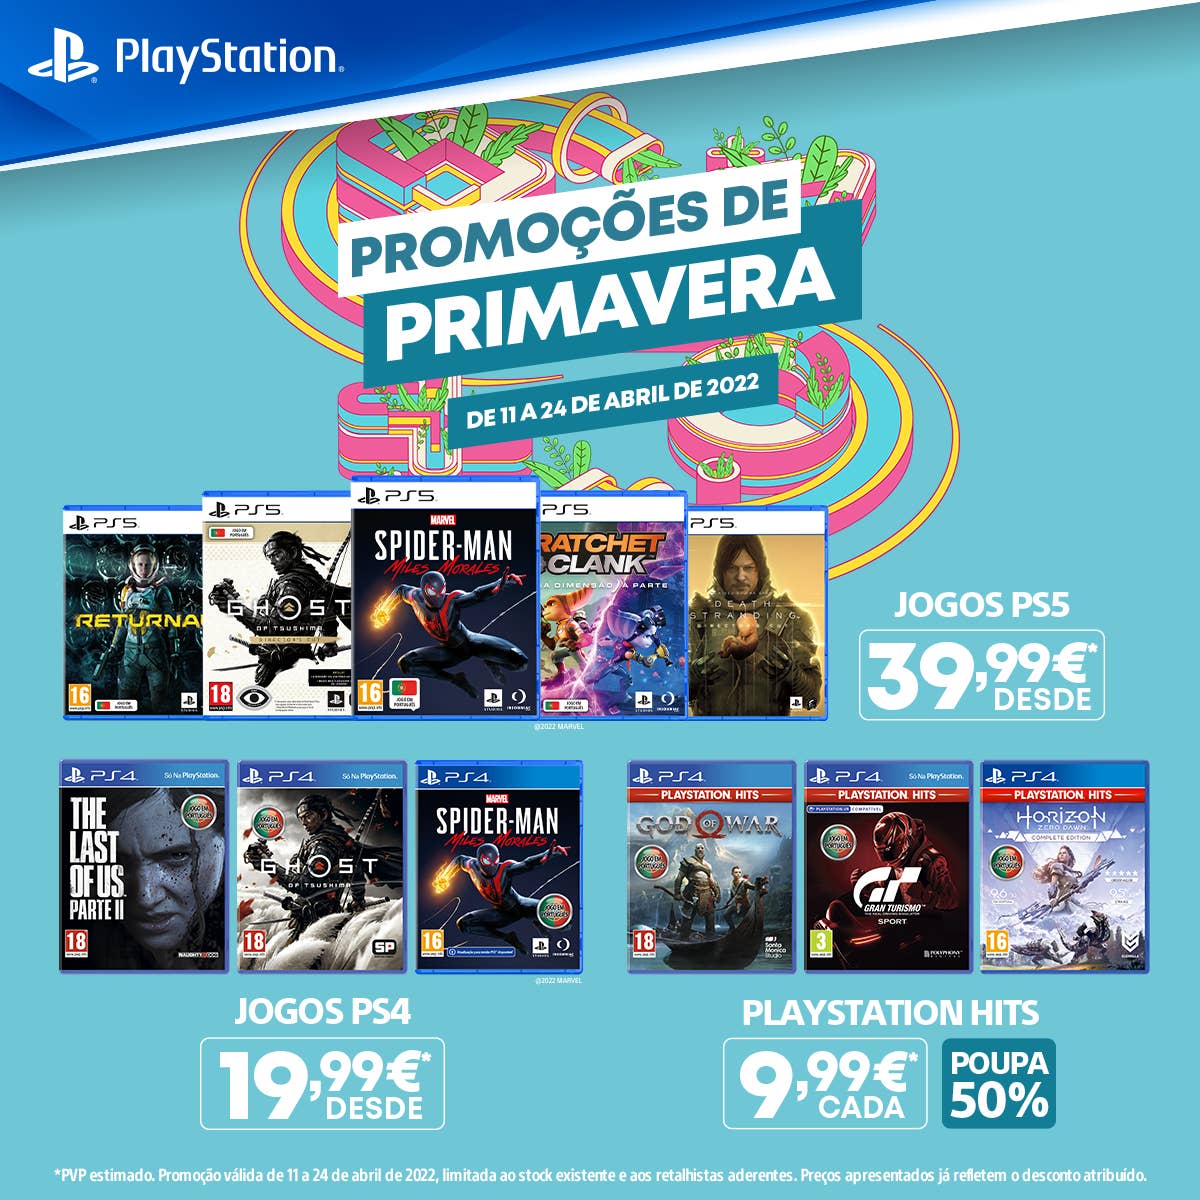 PS Store - Promoções de Primavera - jogos em destaque, datas e descontos